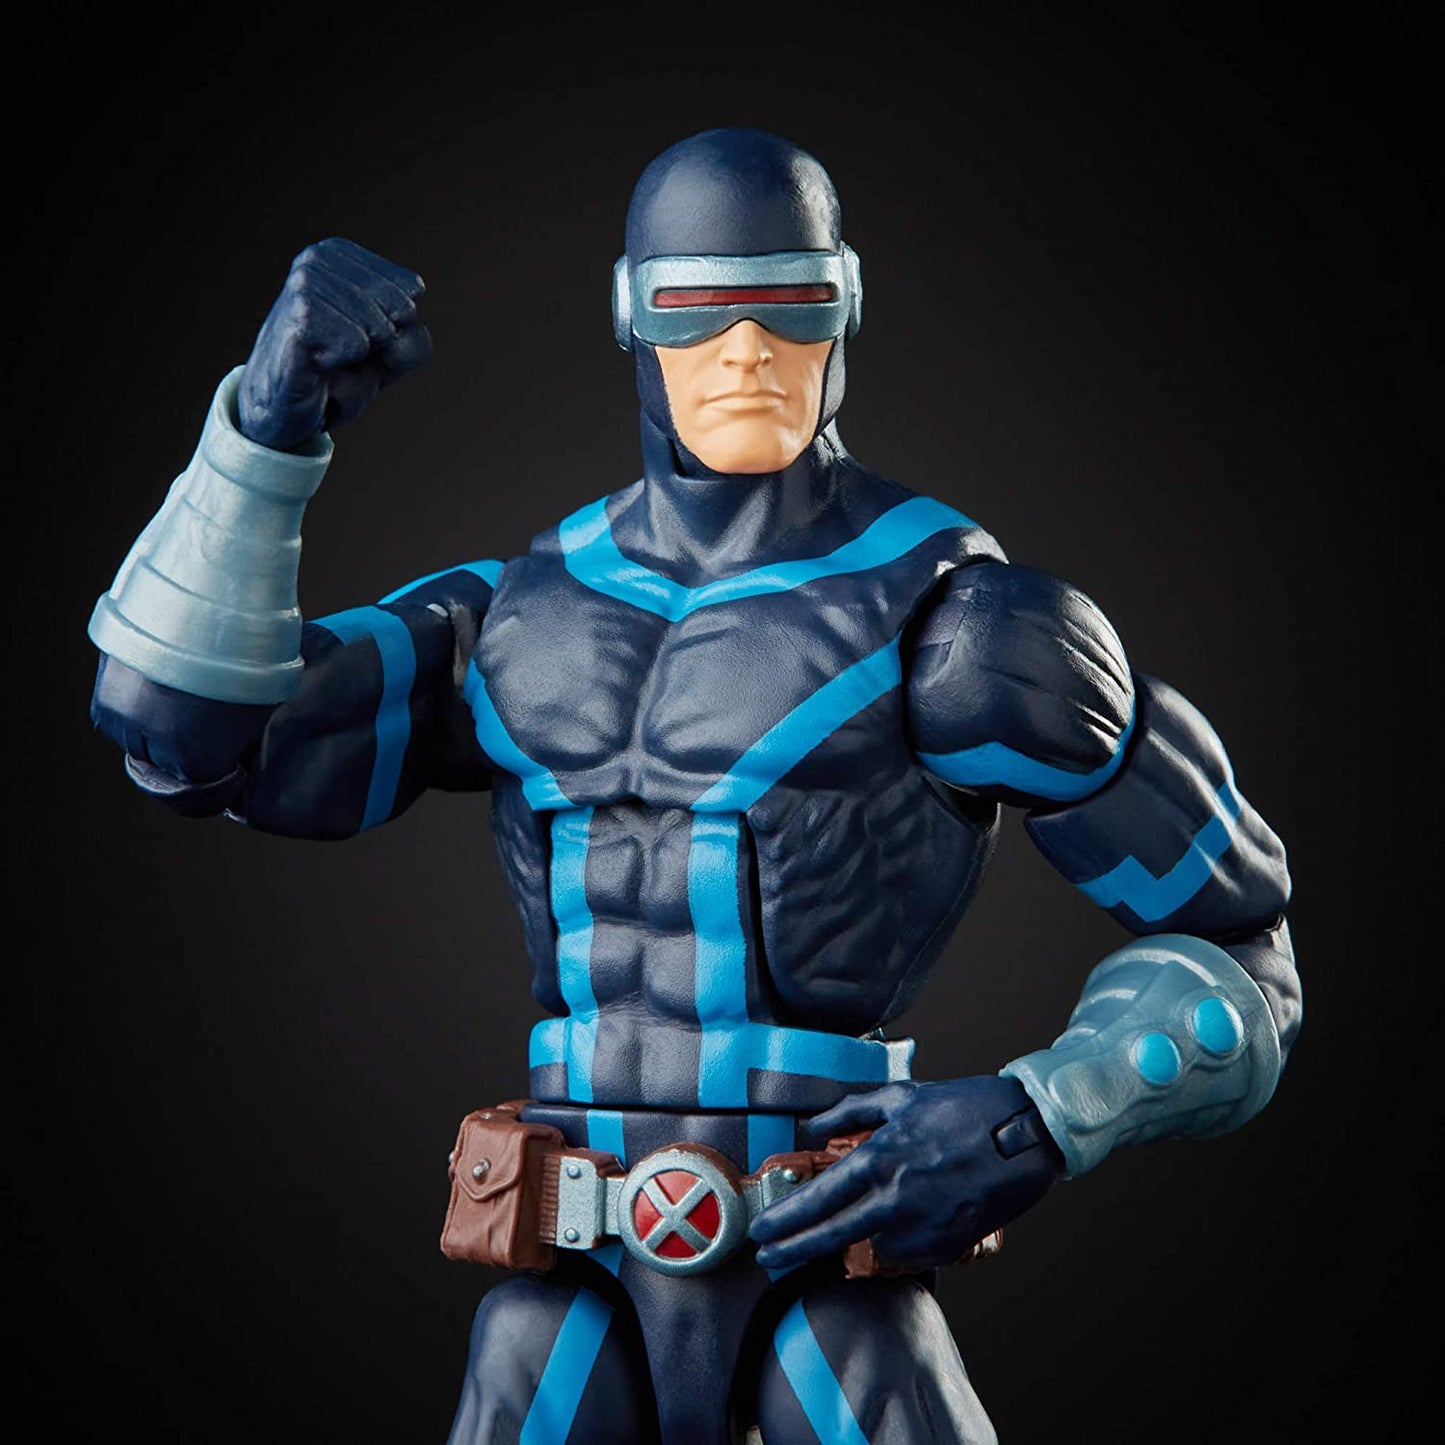 Cyclops (X-Men) - Marvel: Legends Series 6" Action Figure